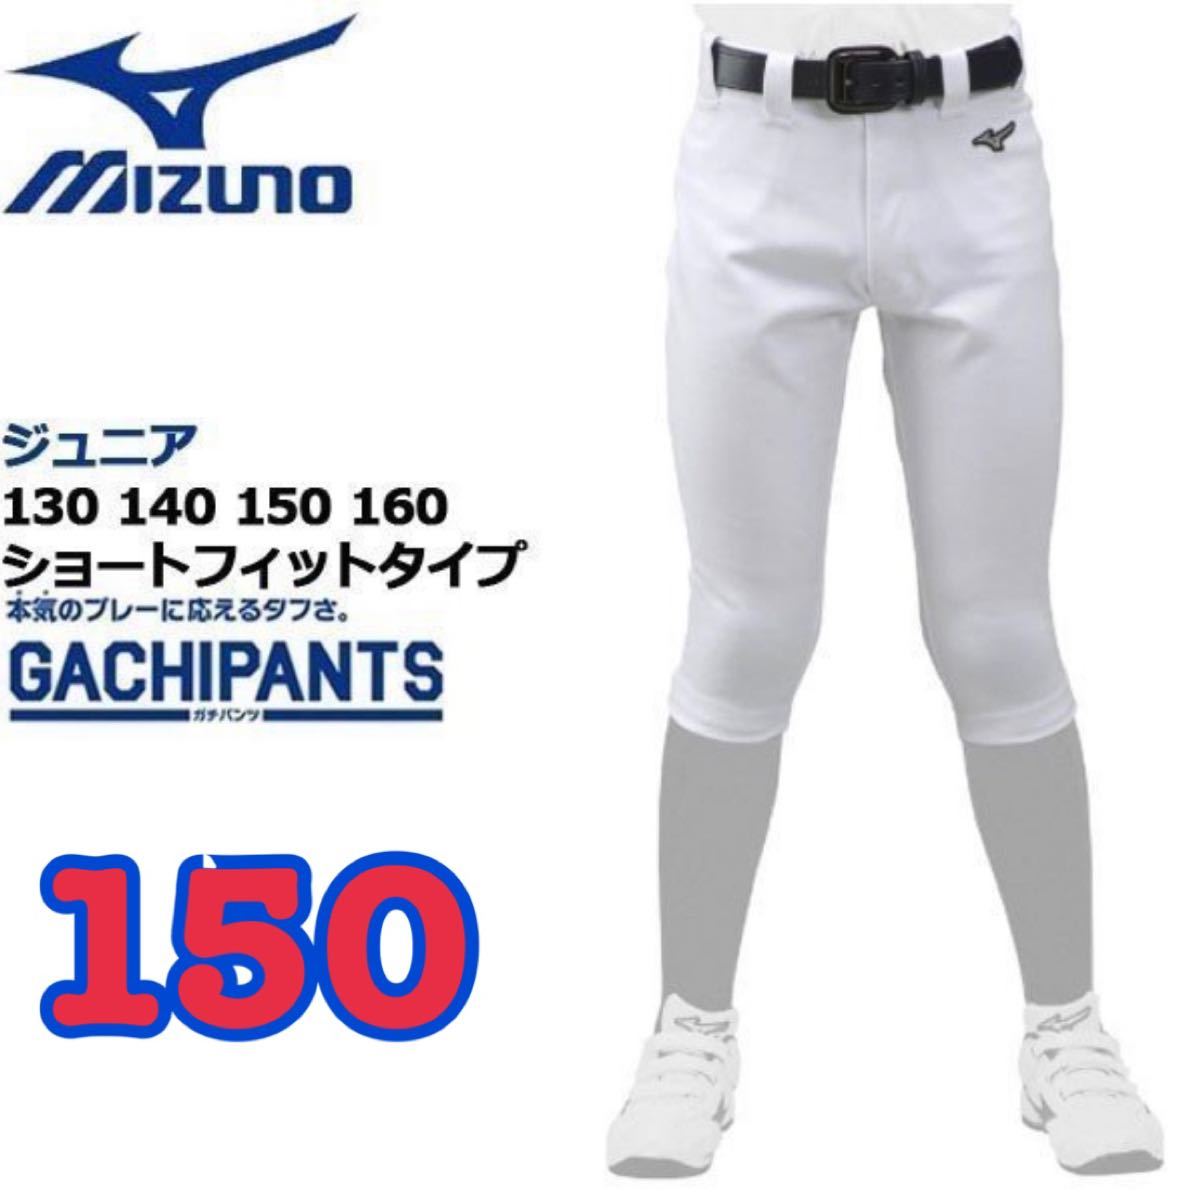 210円 適当な価格 専用 野球 ズボン 150